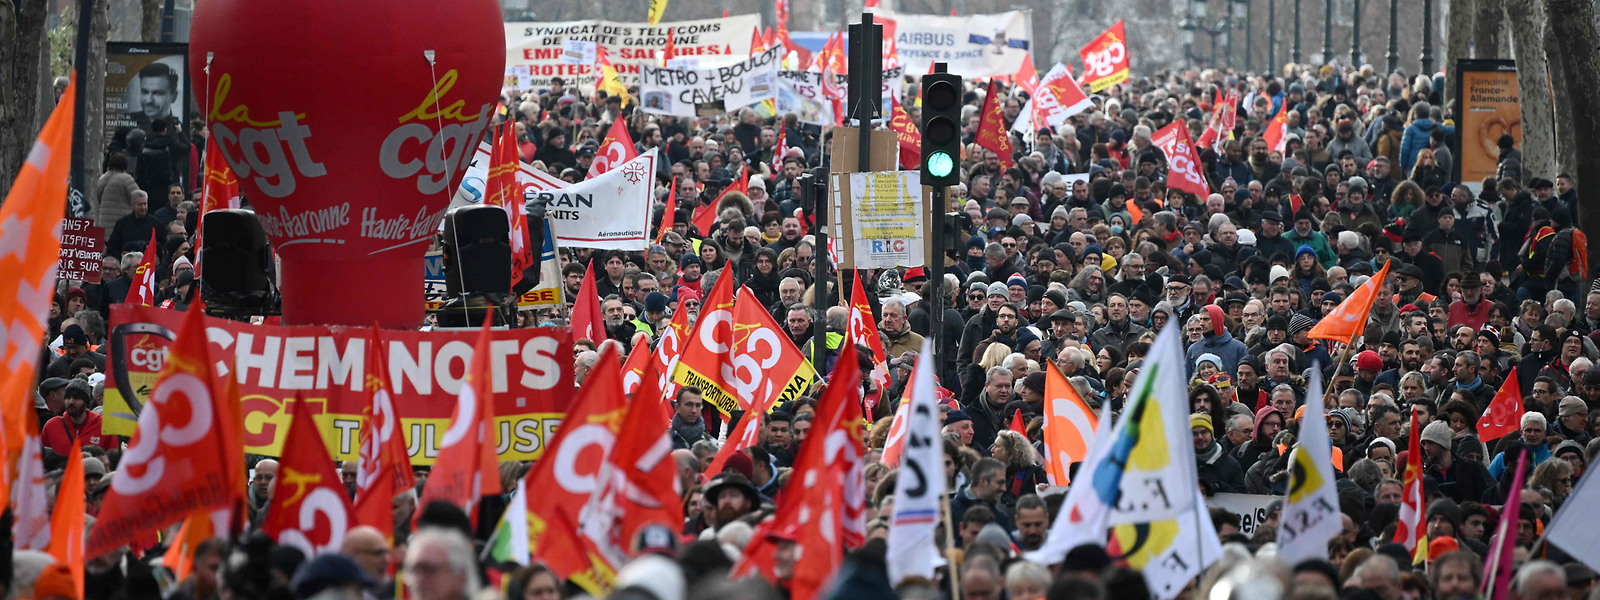 Die Gewerkschaften hatten zu dem Streik- und Protesttag aufgerufen. Sie halten die Pläne der Regierung für ungerecht und brutal.